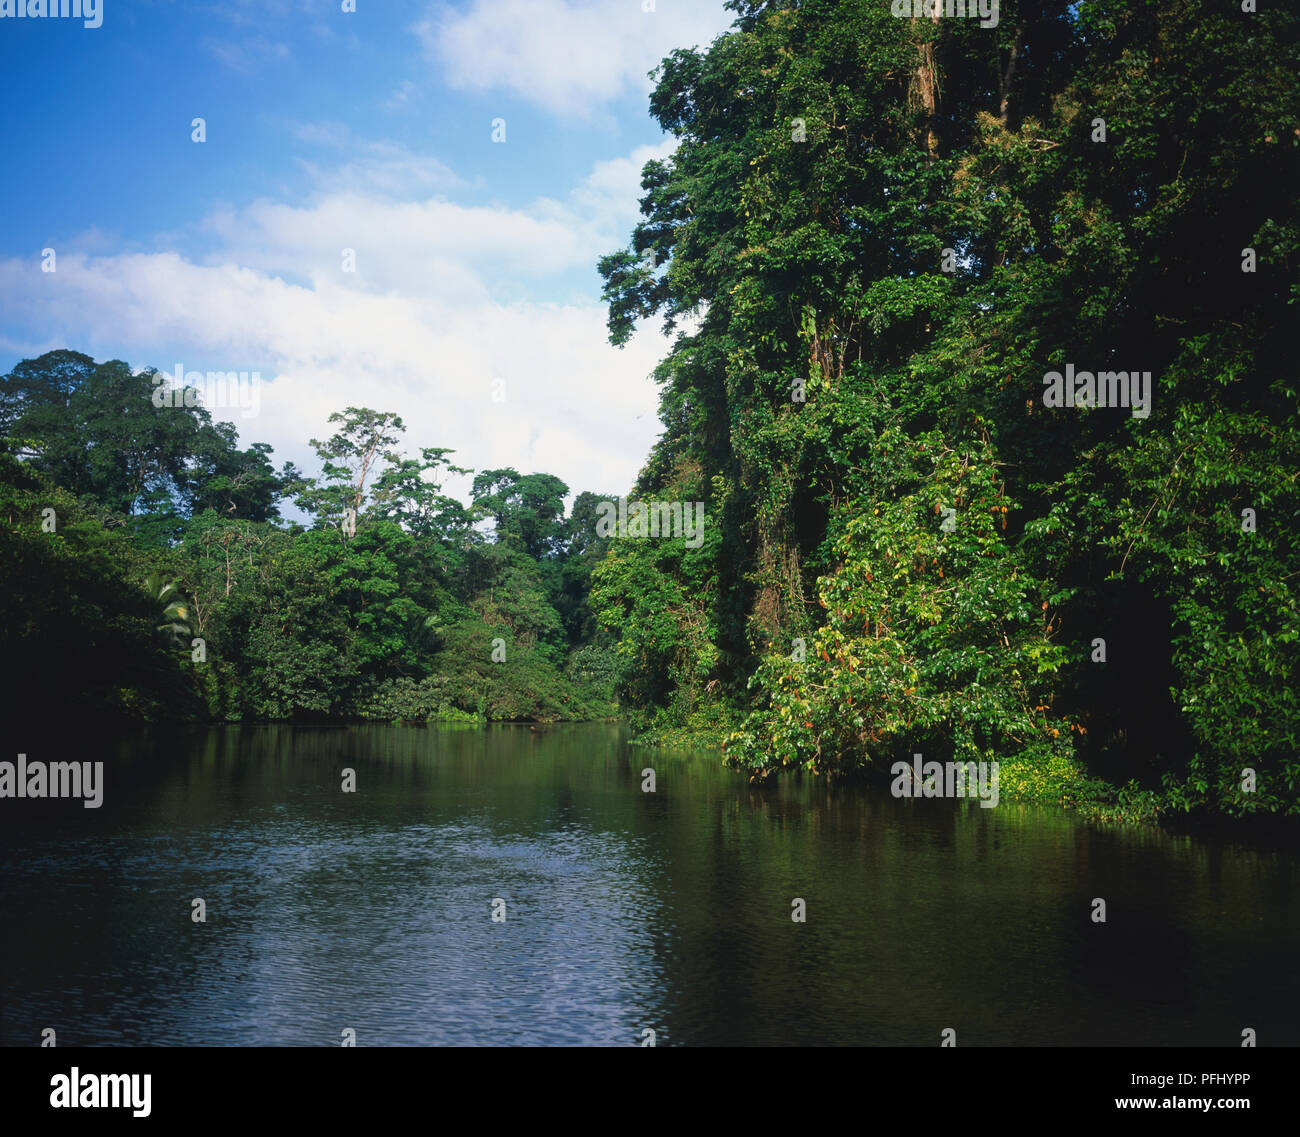 Mittelamerika Costa Rica, Karibik, Parque Nacional Tortuguero Nationalpark Führer Begleitung Tour Gruppe im Boot auf Kanal mit Mangroven und Regenwald gesäumt Stockfoto